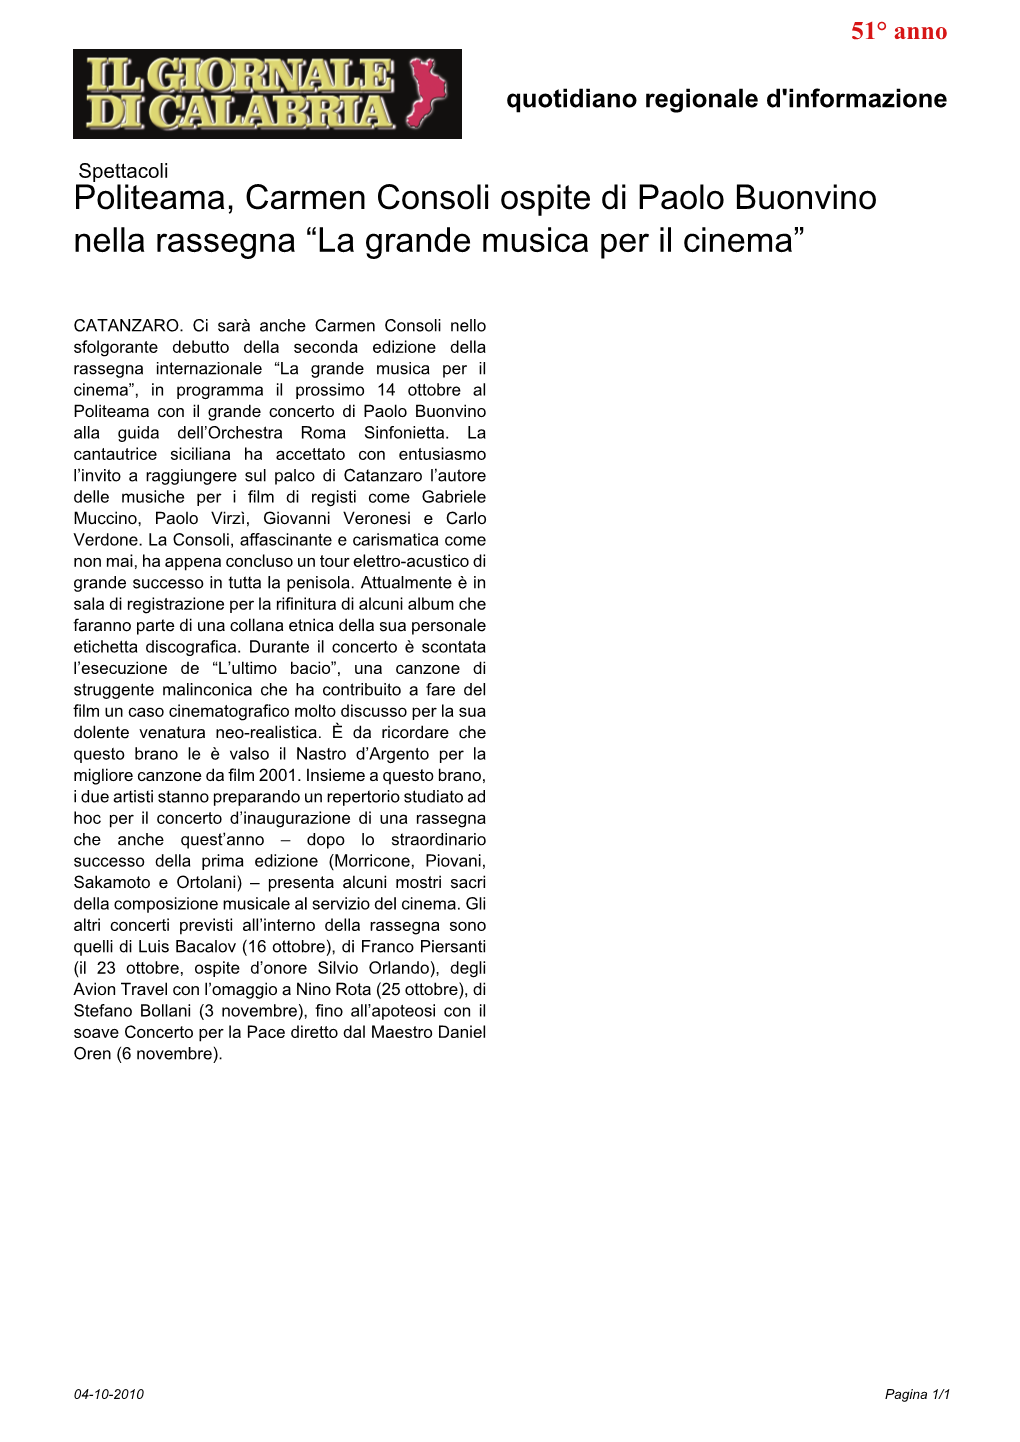 Politeama, Carmen Consoli Ospite Di Paolo Buonvino Nella Rassegna “La Grande Musica Per Il Cinema”